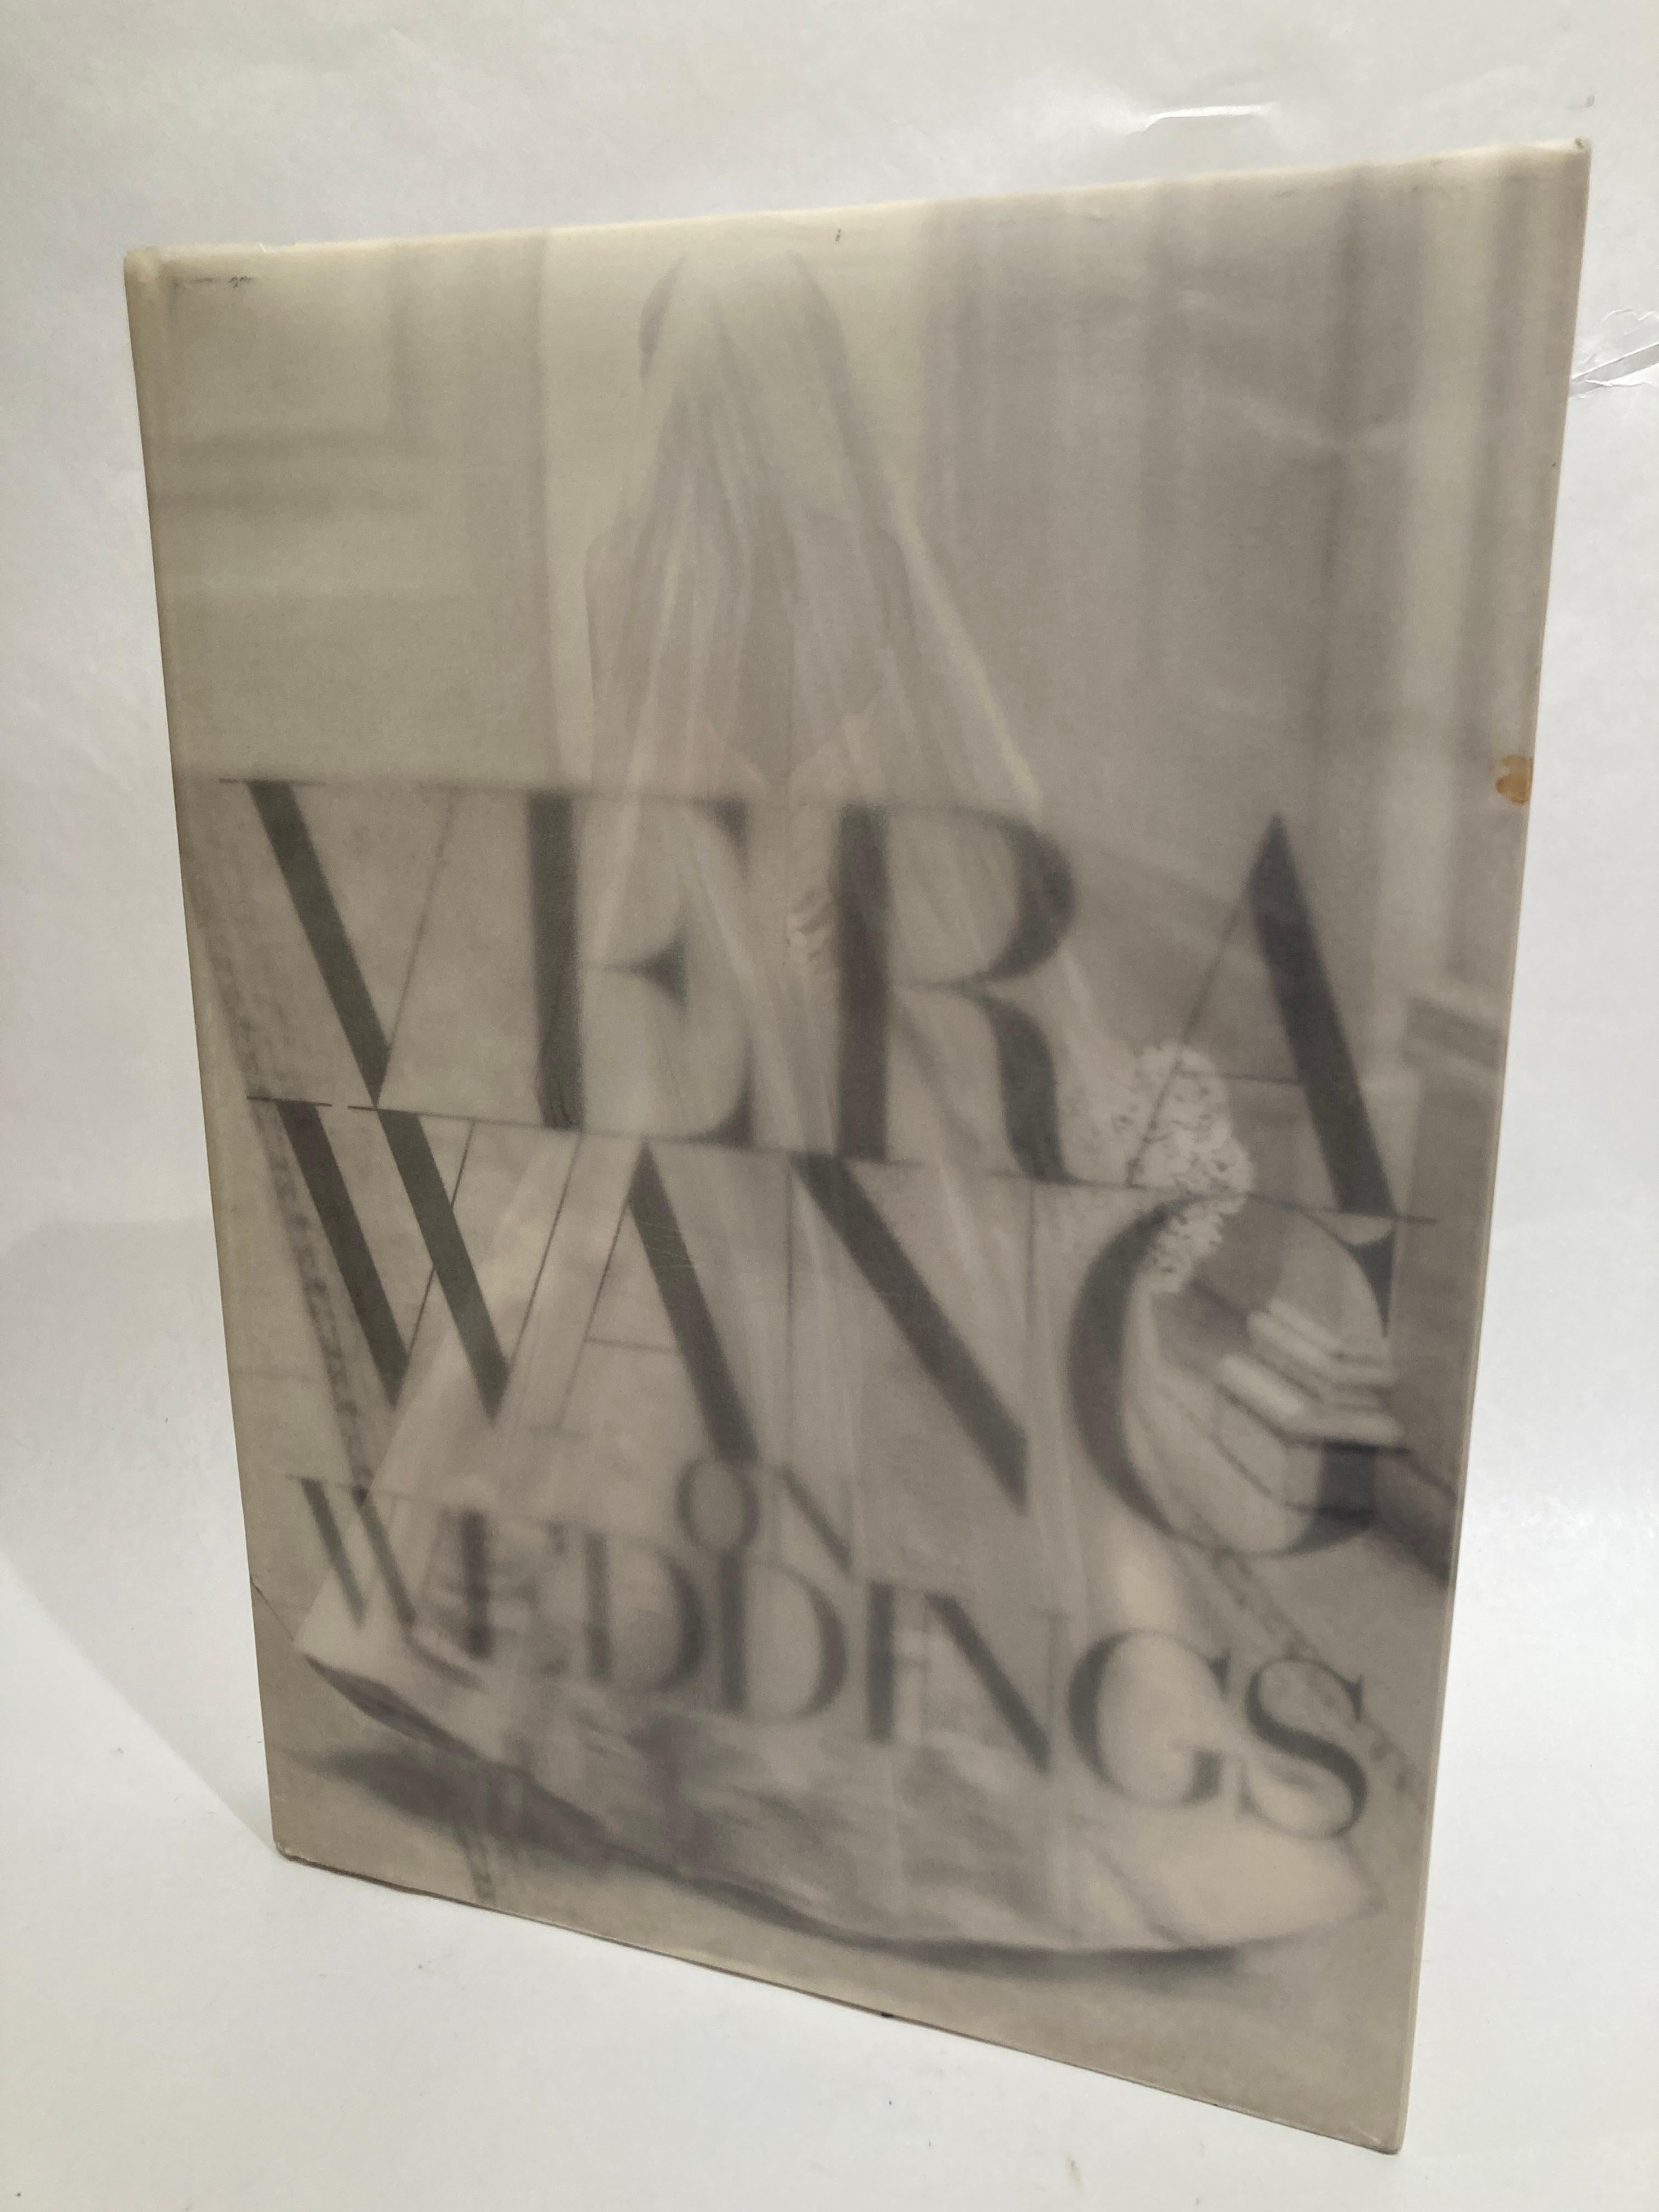 Vera Wang On Weddings par Vera Wang Grand livre à couverture rigide.
Dans ce volume superbement produit par Callaway Editions, Ltd ; la plus célèbre créatrice de robes de mariée au monde partage ses pensées et sa vision sur les mariages. S'appuyant